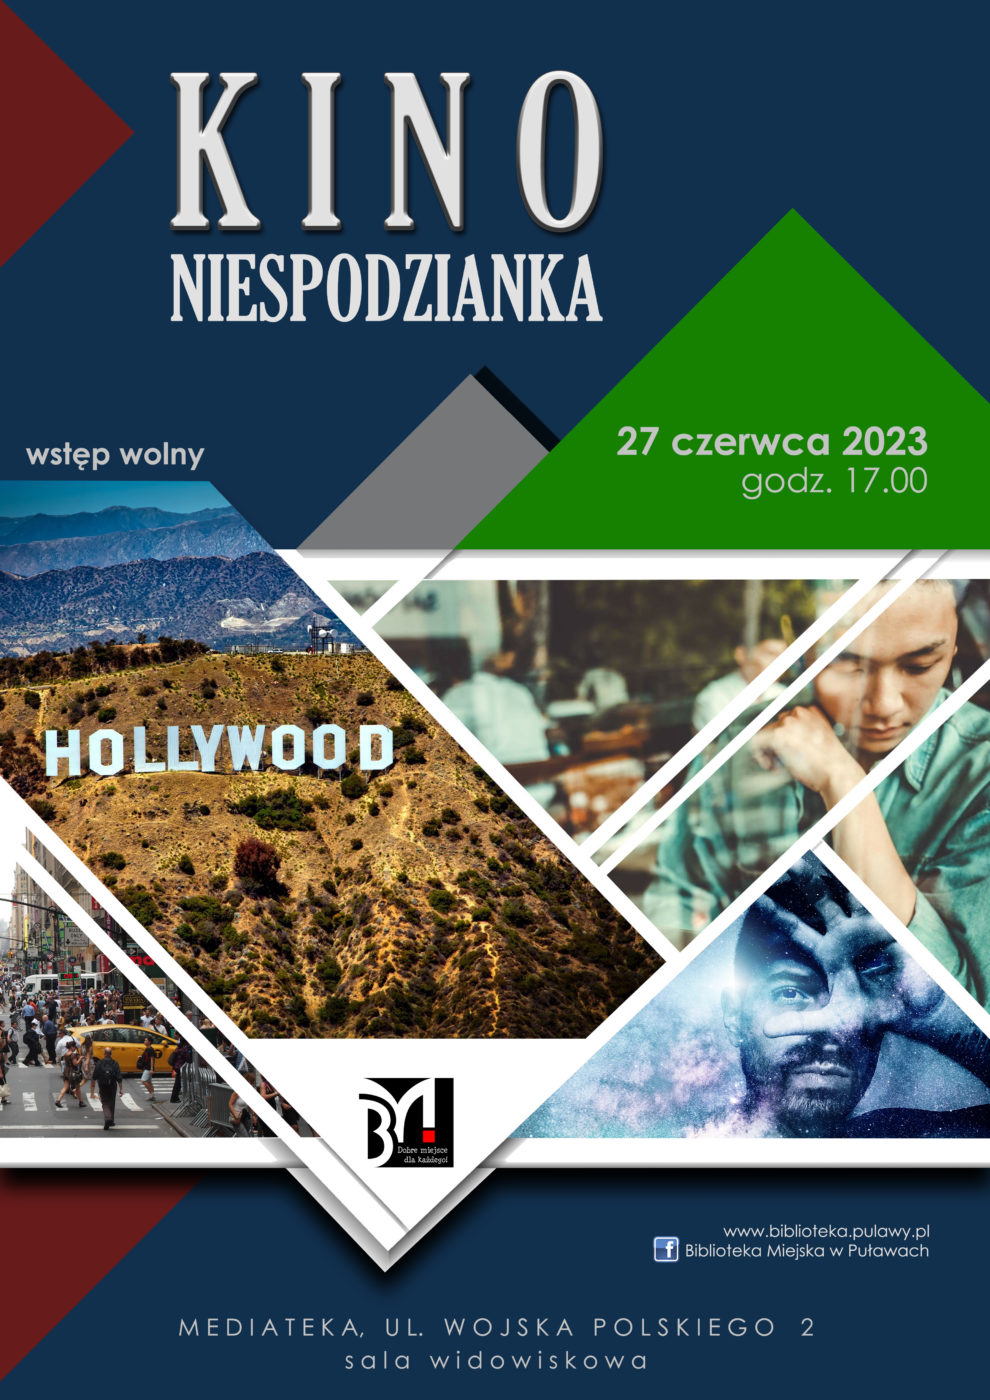 Plakat informujący o seansie filmowym dla dorosłych w ramach cyklu Kino Niespodzianka. Termin: 27 czerwca 2023, godz. 17.00, Mediateka, ul. Wojska Polskiego 2.